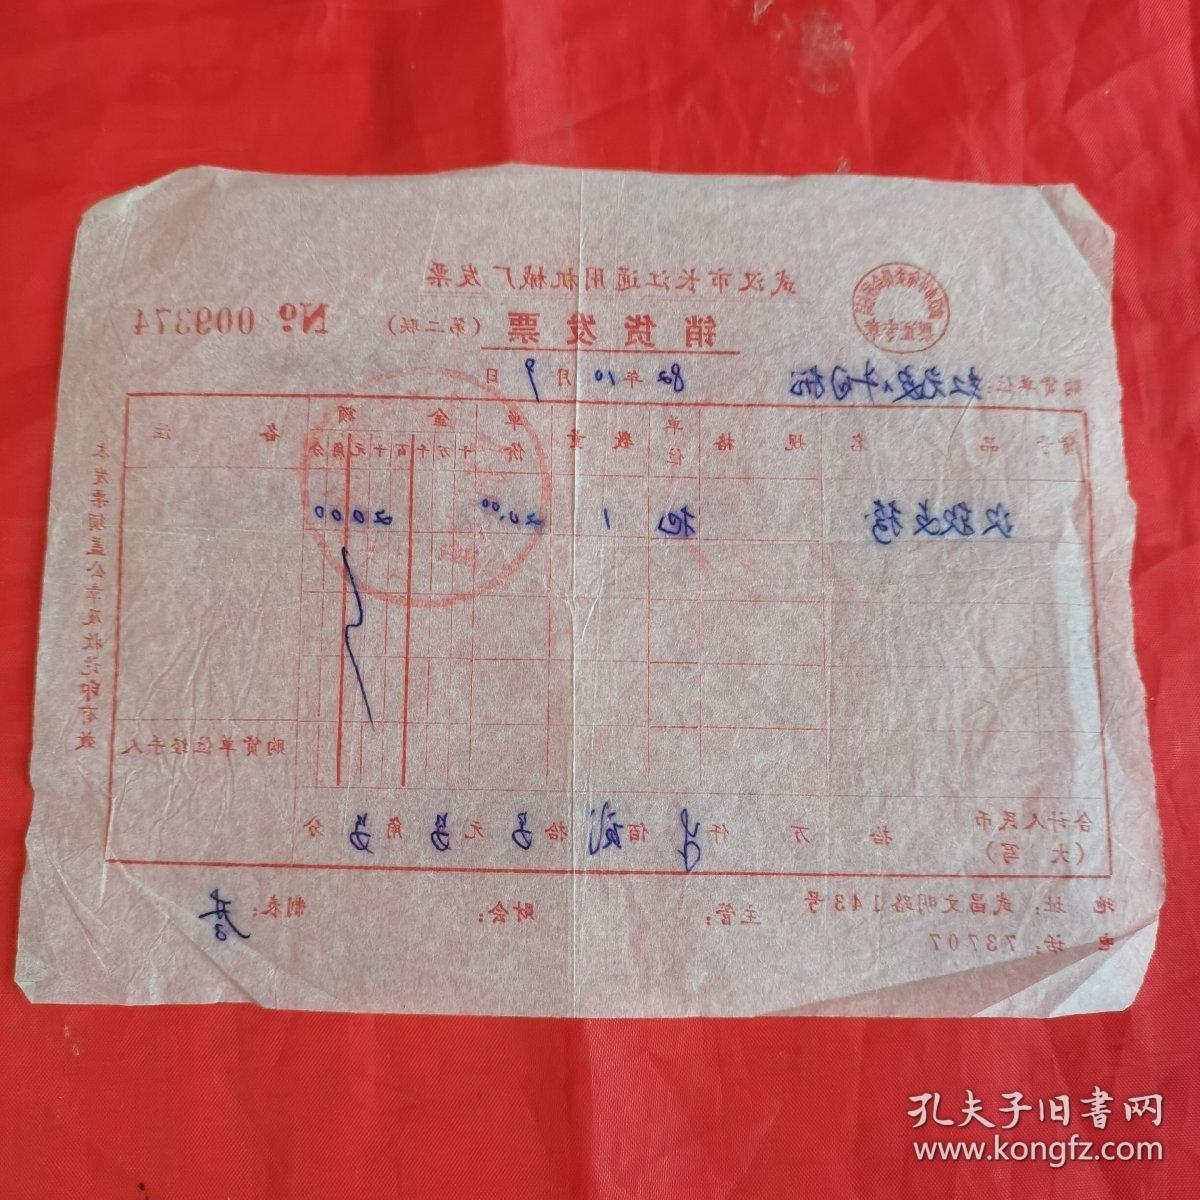 武汉市长江通用机械厂发票（武汉市革命委员会税务局 票证专章）。【盖有“武汉市钢制像俱六厂 业务供销组”（印章），开票日期：1982年10月9日】。私藏物品。